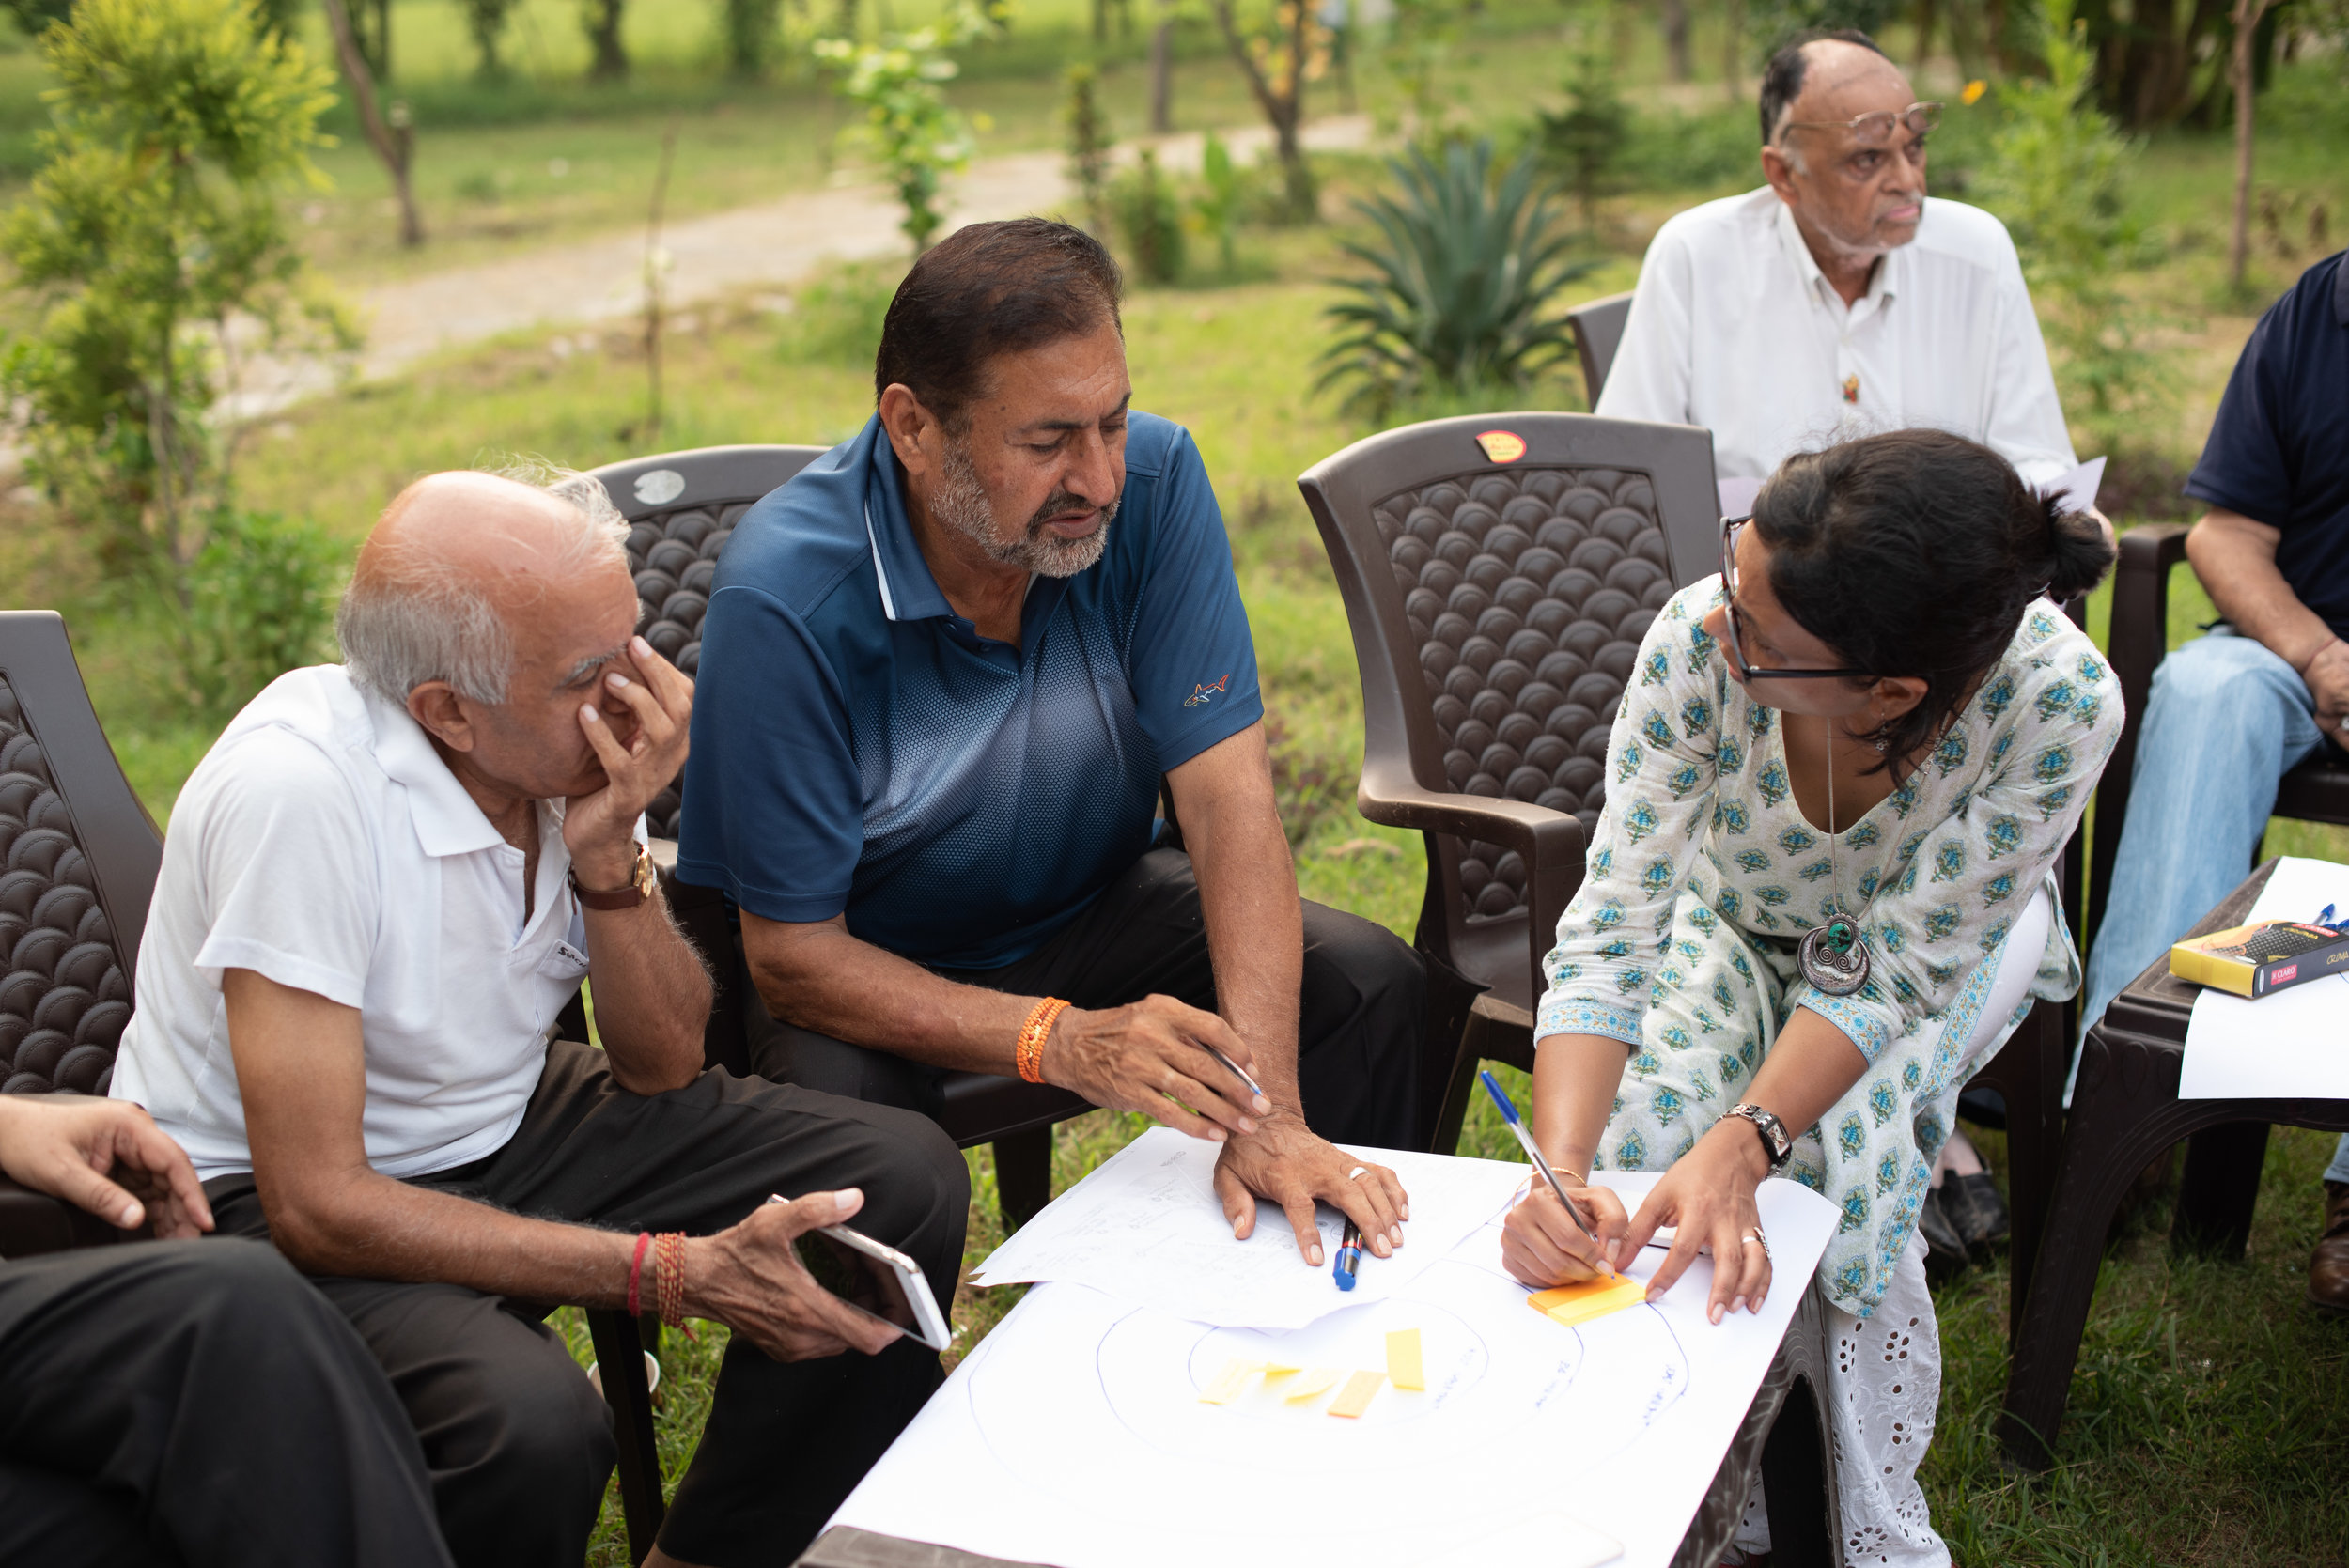 Group 1 discussing Jalandhar's assets